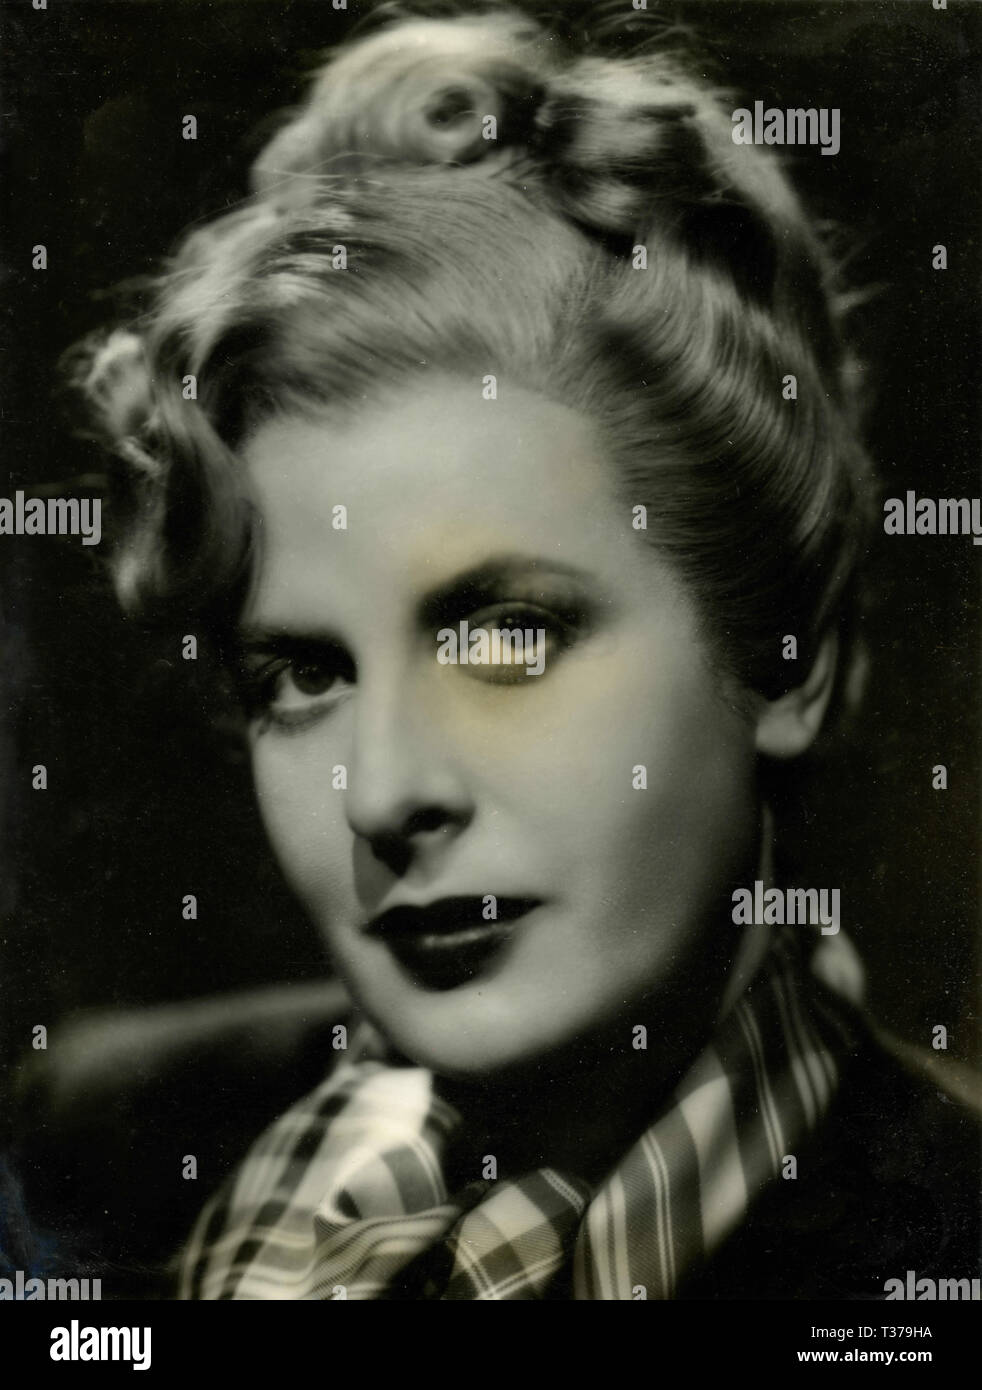 Italian actress Ruby Dalma, 1942 Stock Photo